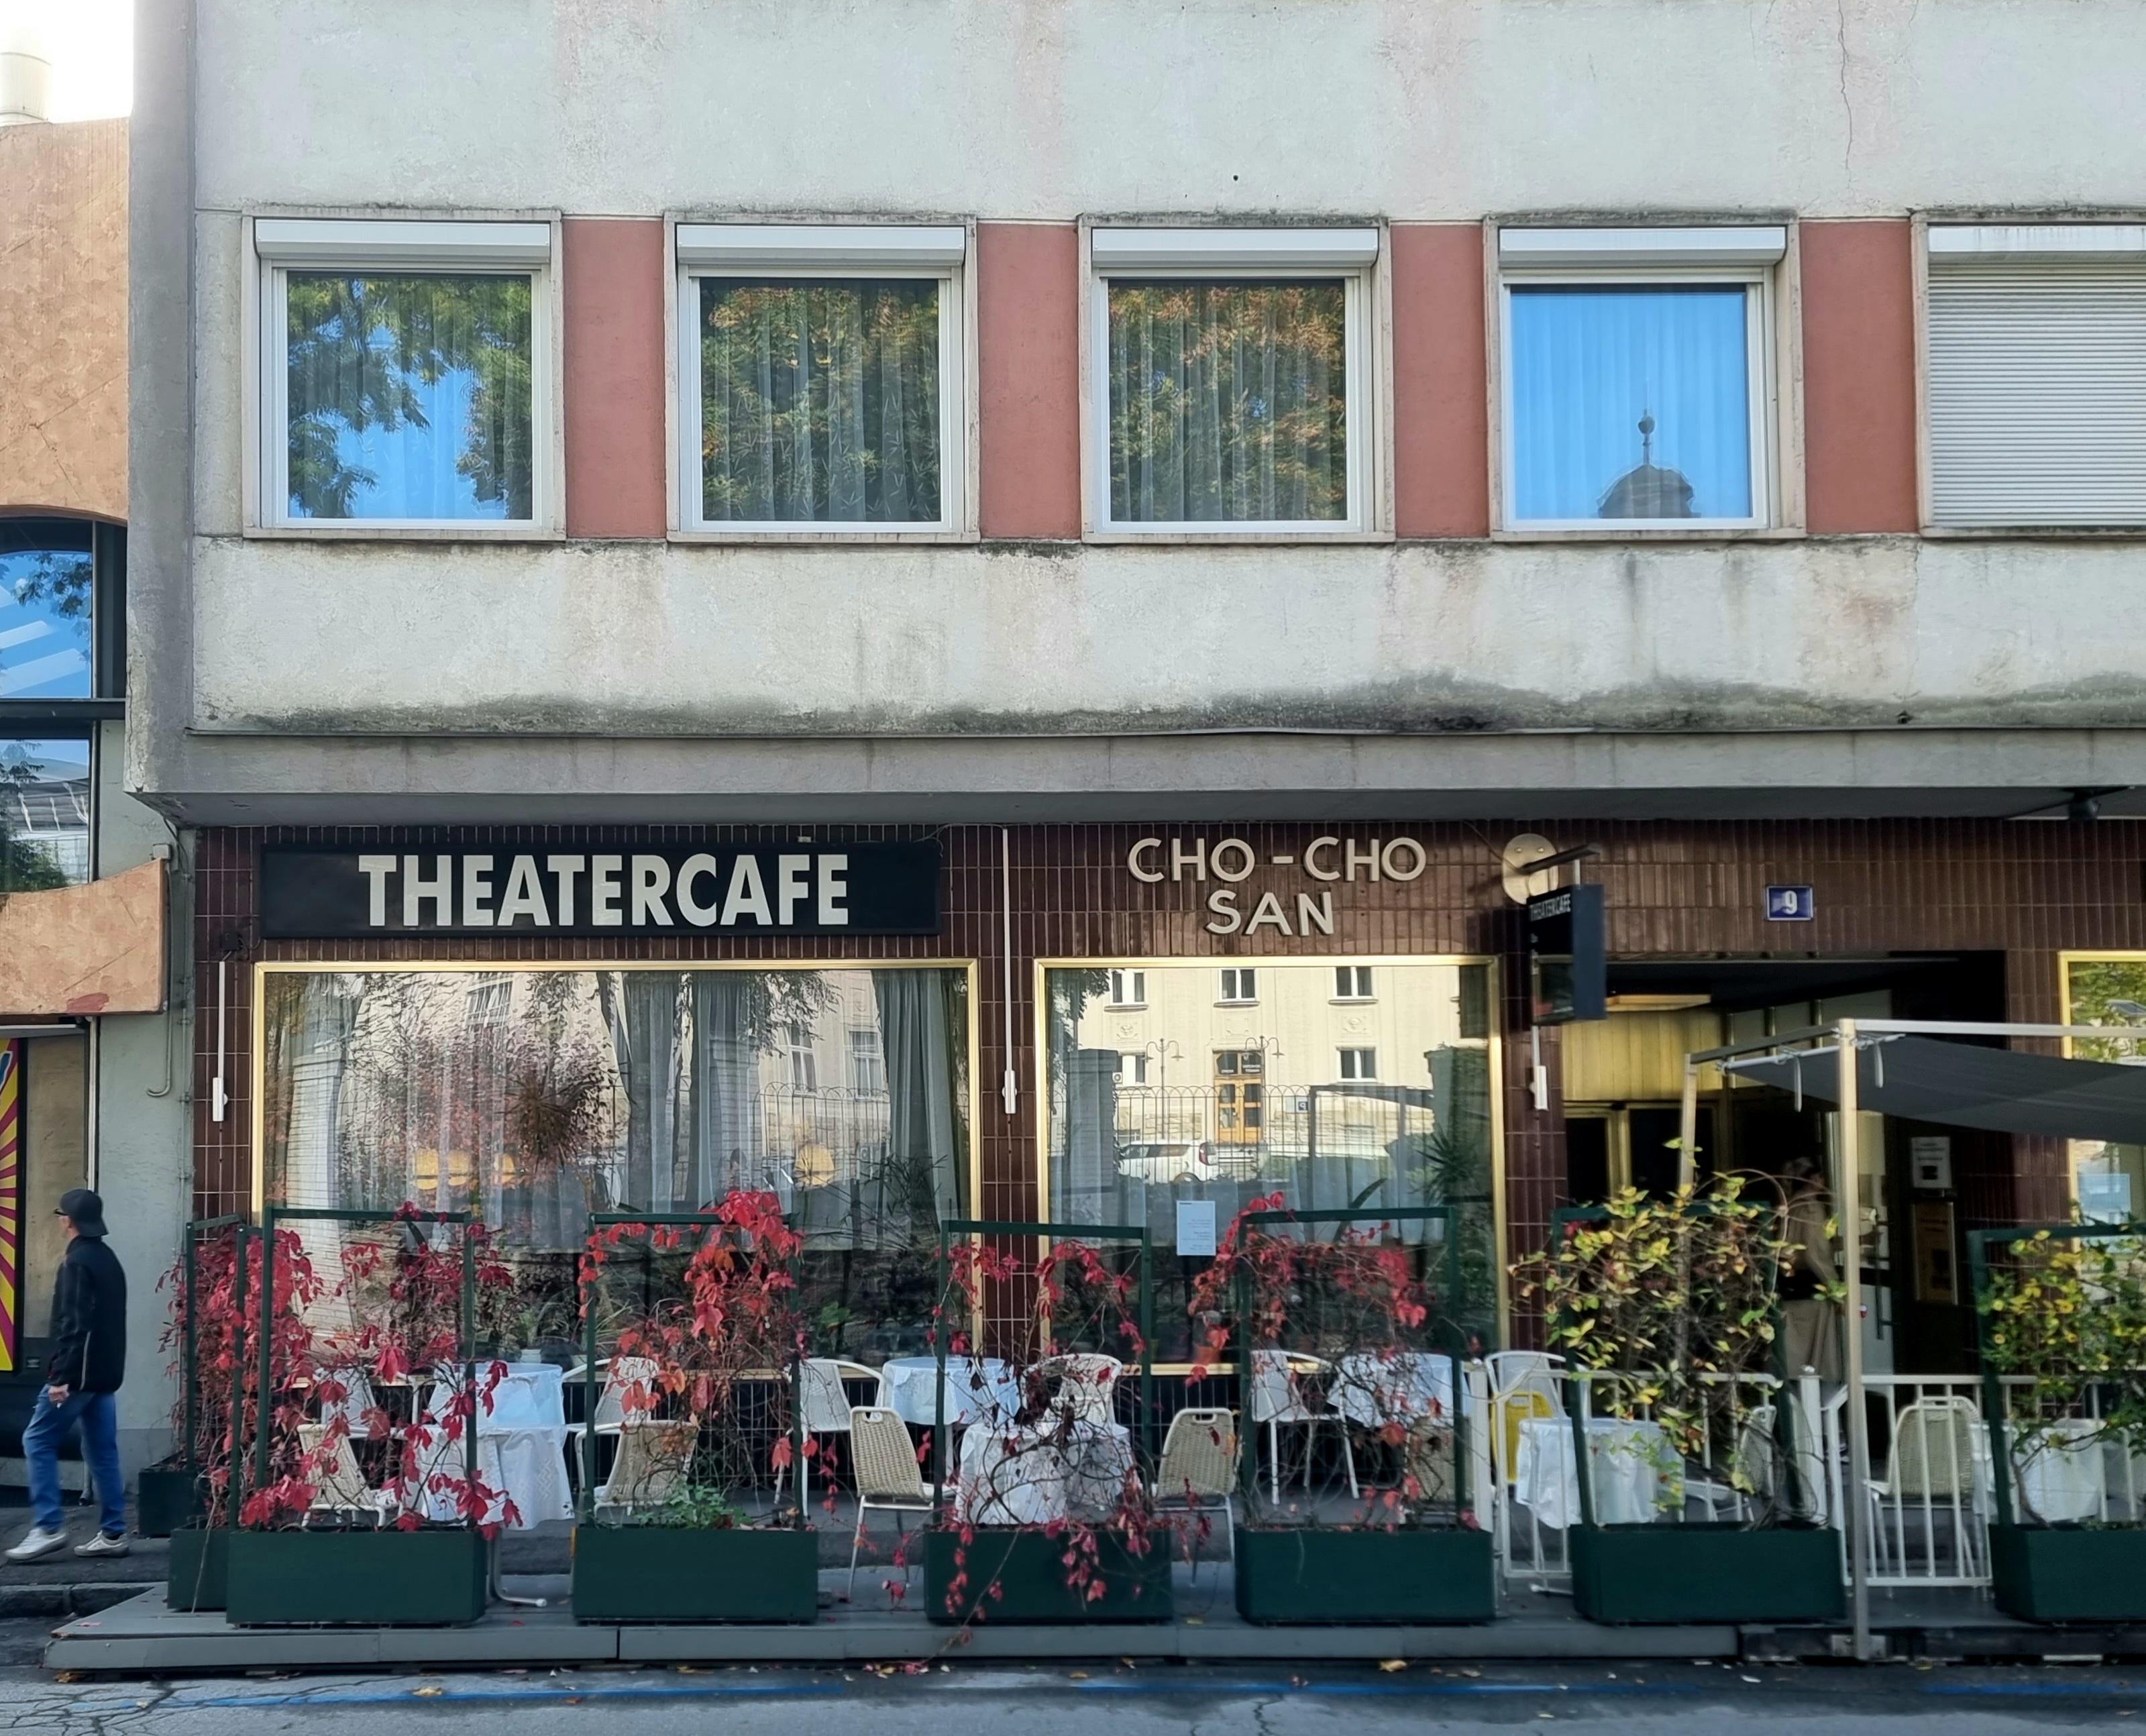 Eine Außenaufnahme des Theatercafe Cho-Cho-San, einer Kaffeehaus-Institution in Klagenfurt und ein guter Rückzugsort für Lesestunden im Cafe